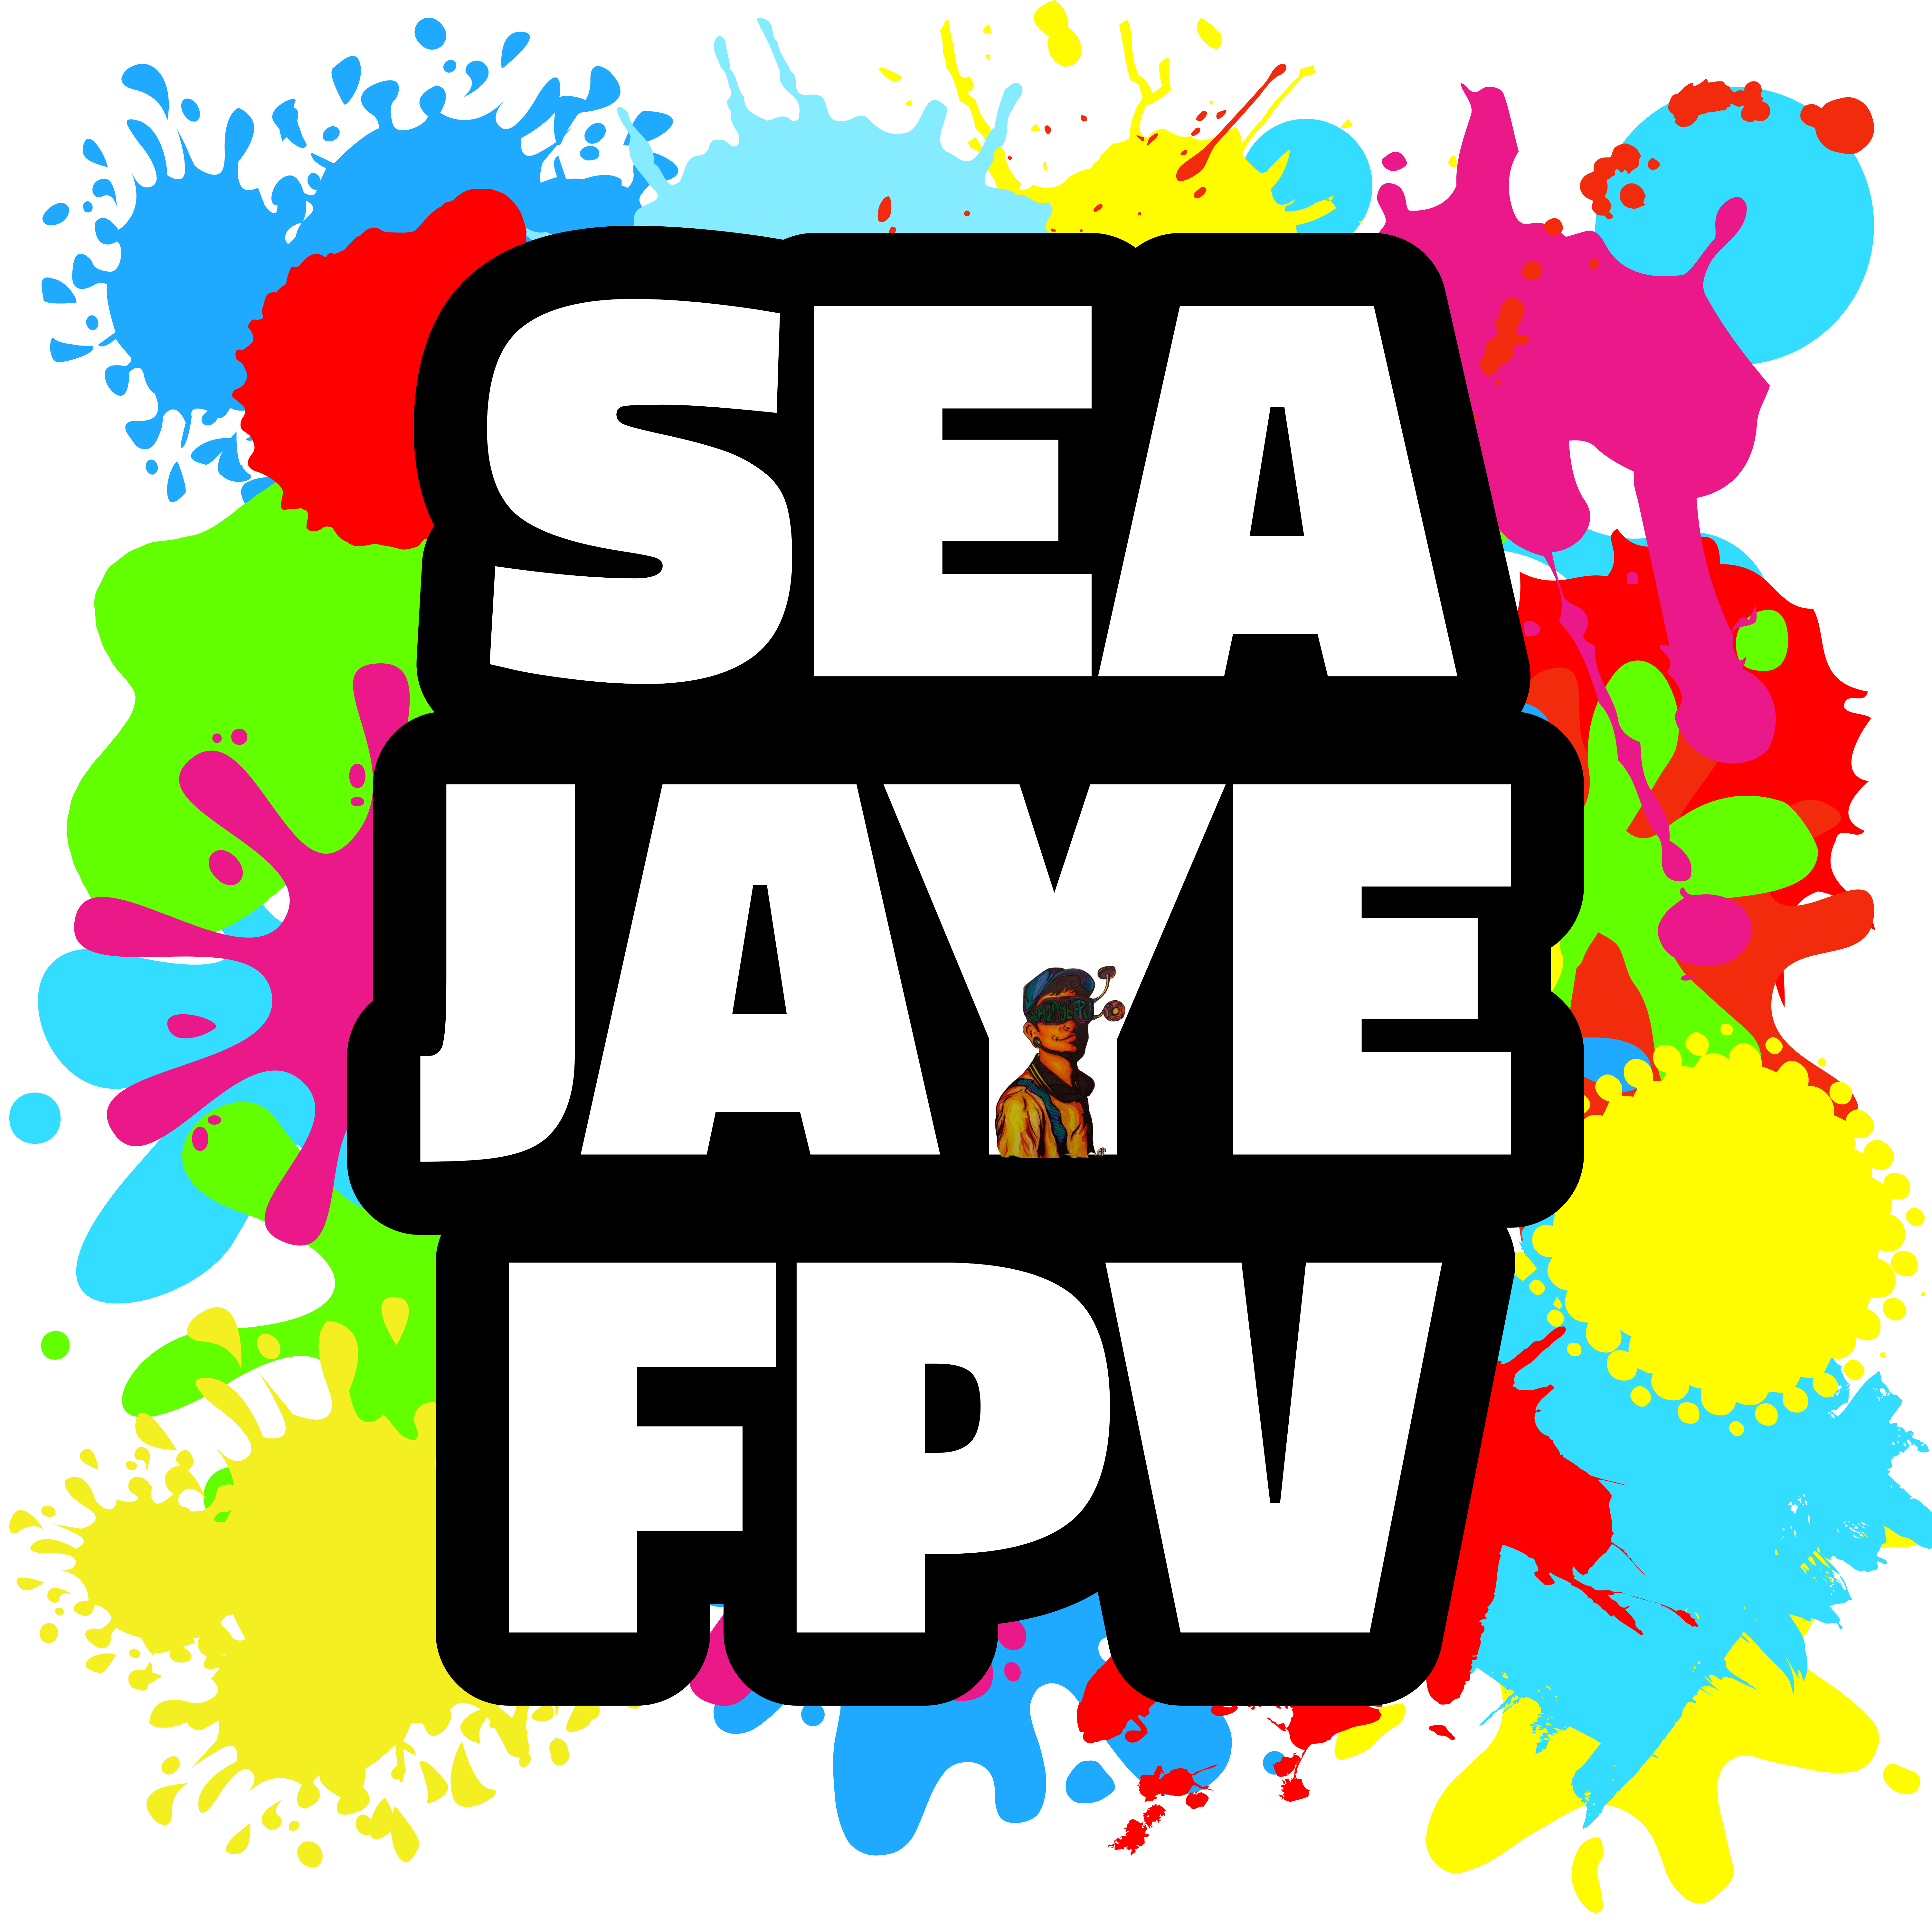 SeaJaye FPV